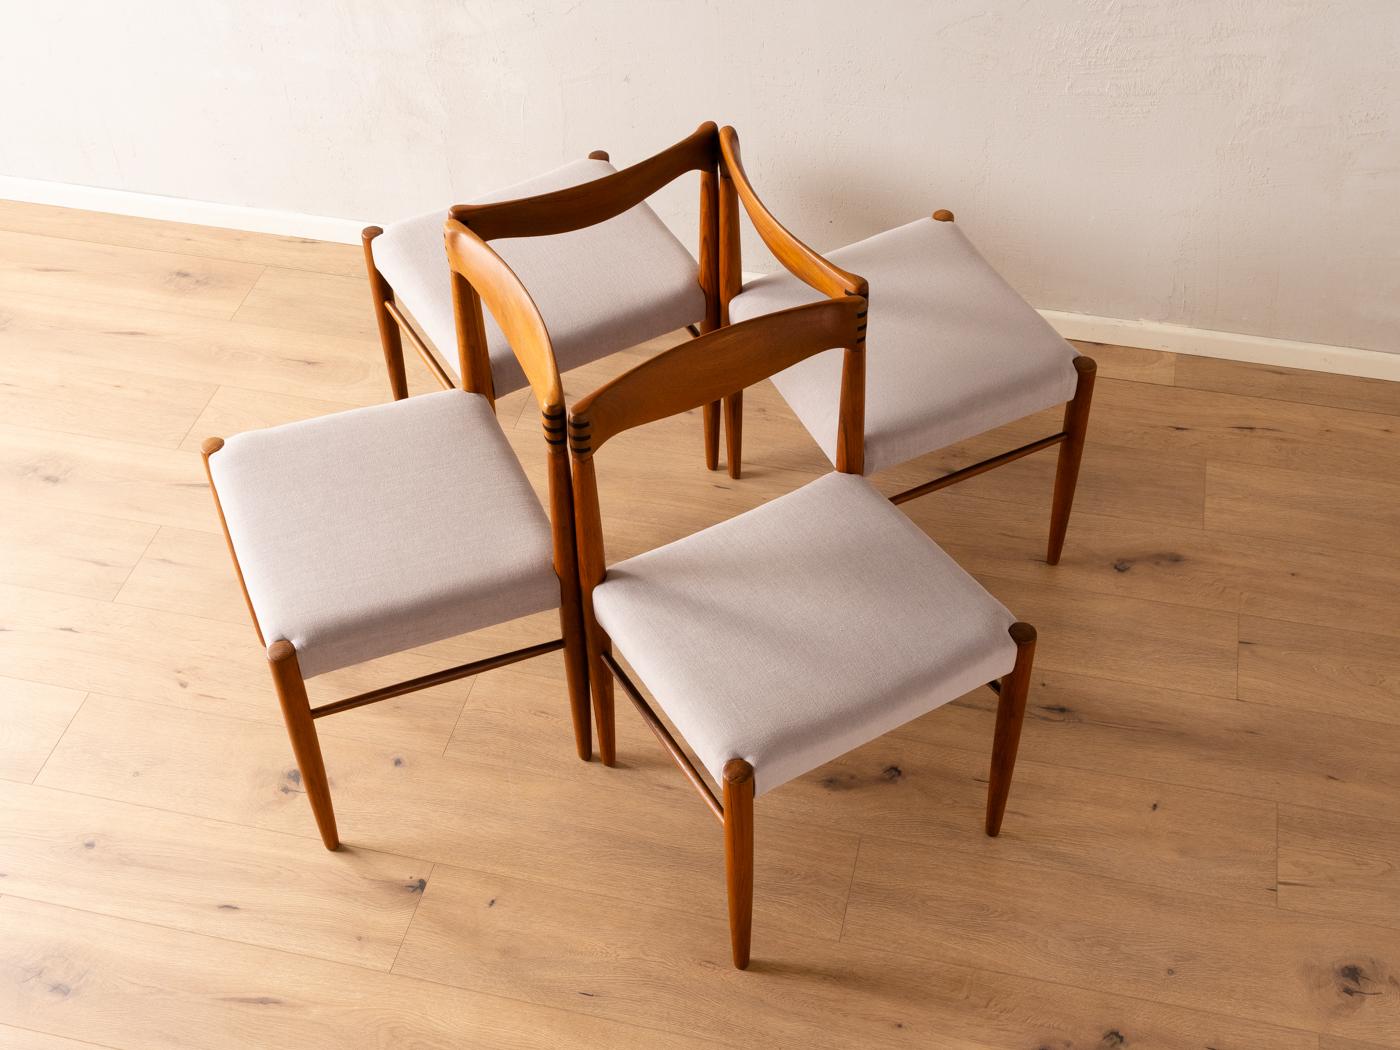 Klassische Stühle aus den 1960er Jahren von H.W. Klein für Bramin. Massiver Teakholzrahmen mit verzapfter Rückenlehne. Die Stühle wurden neu gepolstert und mit einem hochwertigen Stoff in Hellgrau bezogen. Das Angebot umfasst 4